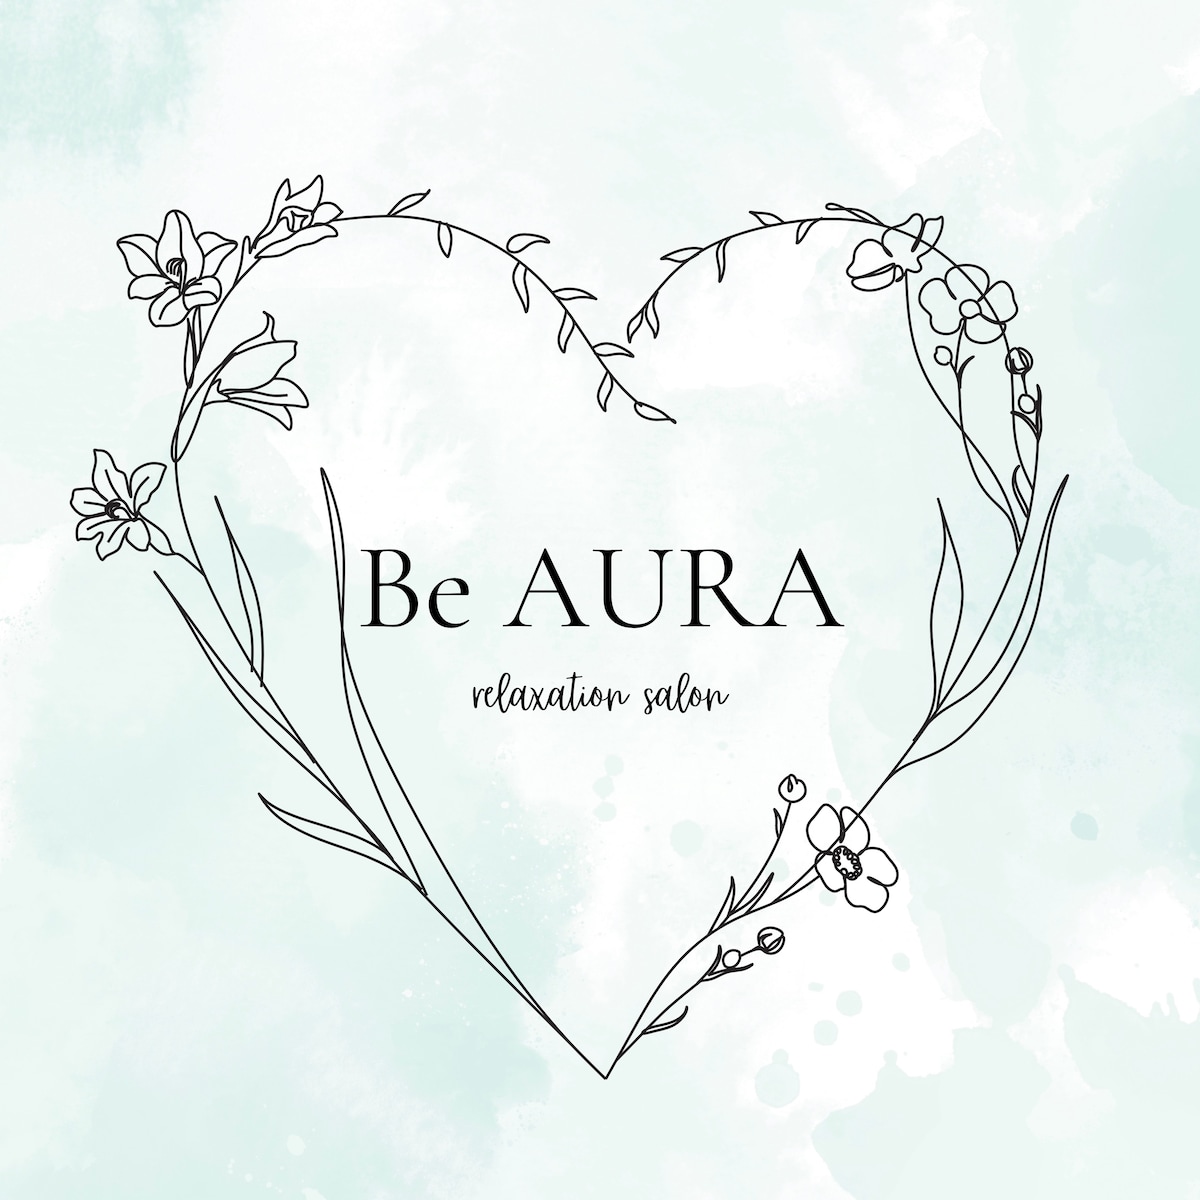 Be AURA様のロゴデザイン